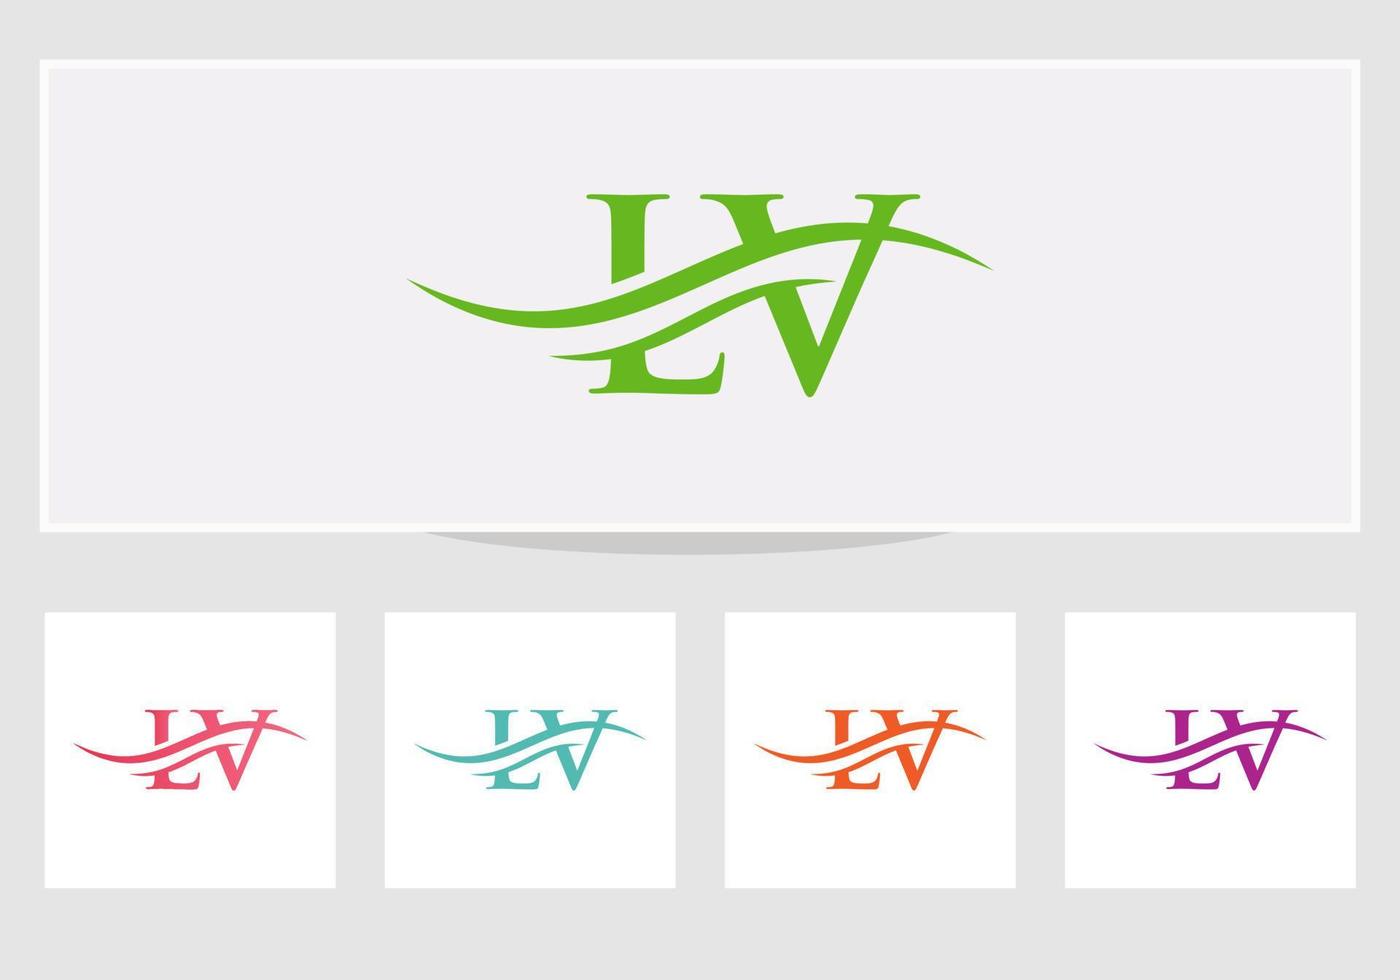 création initiale du logo lv de la lettre liée. vecteur de conception de logo lettre lv moderne avec tendance moderne